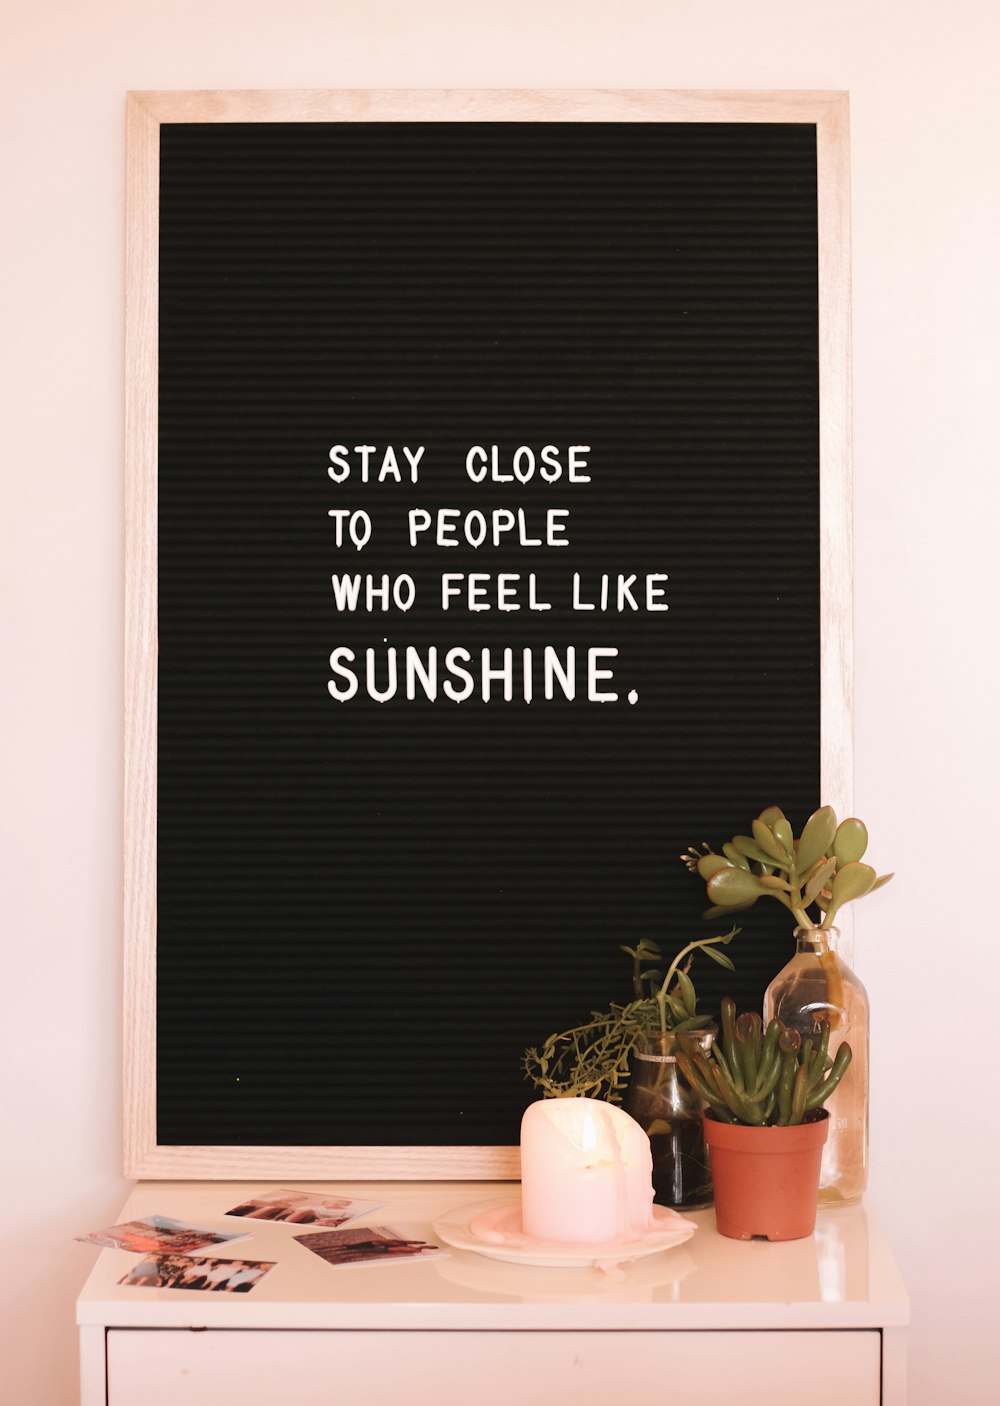 Mantente cerca de las personas que tienen ganas de tomar el sol